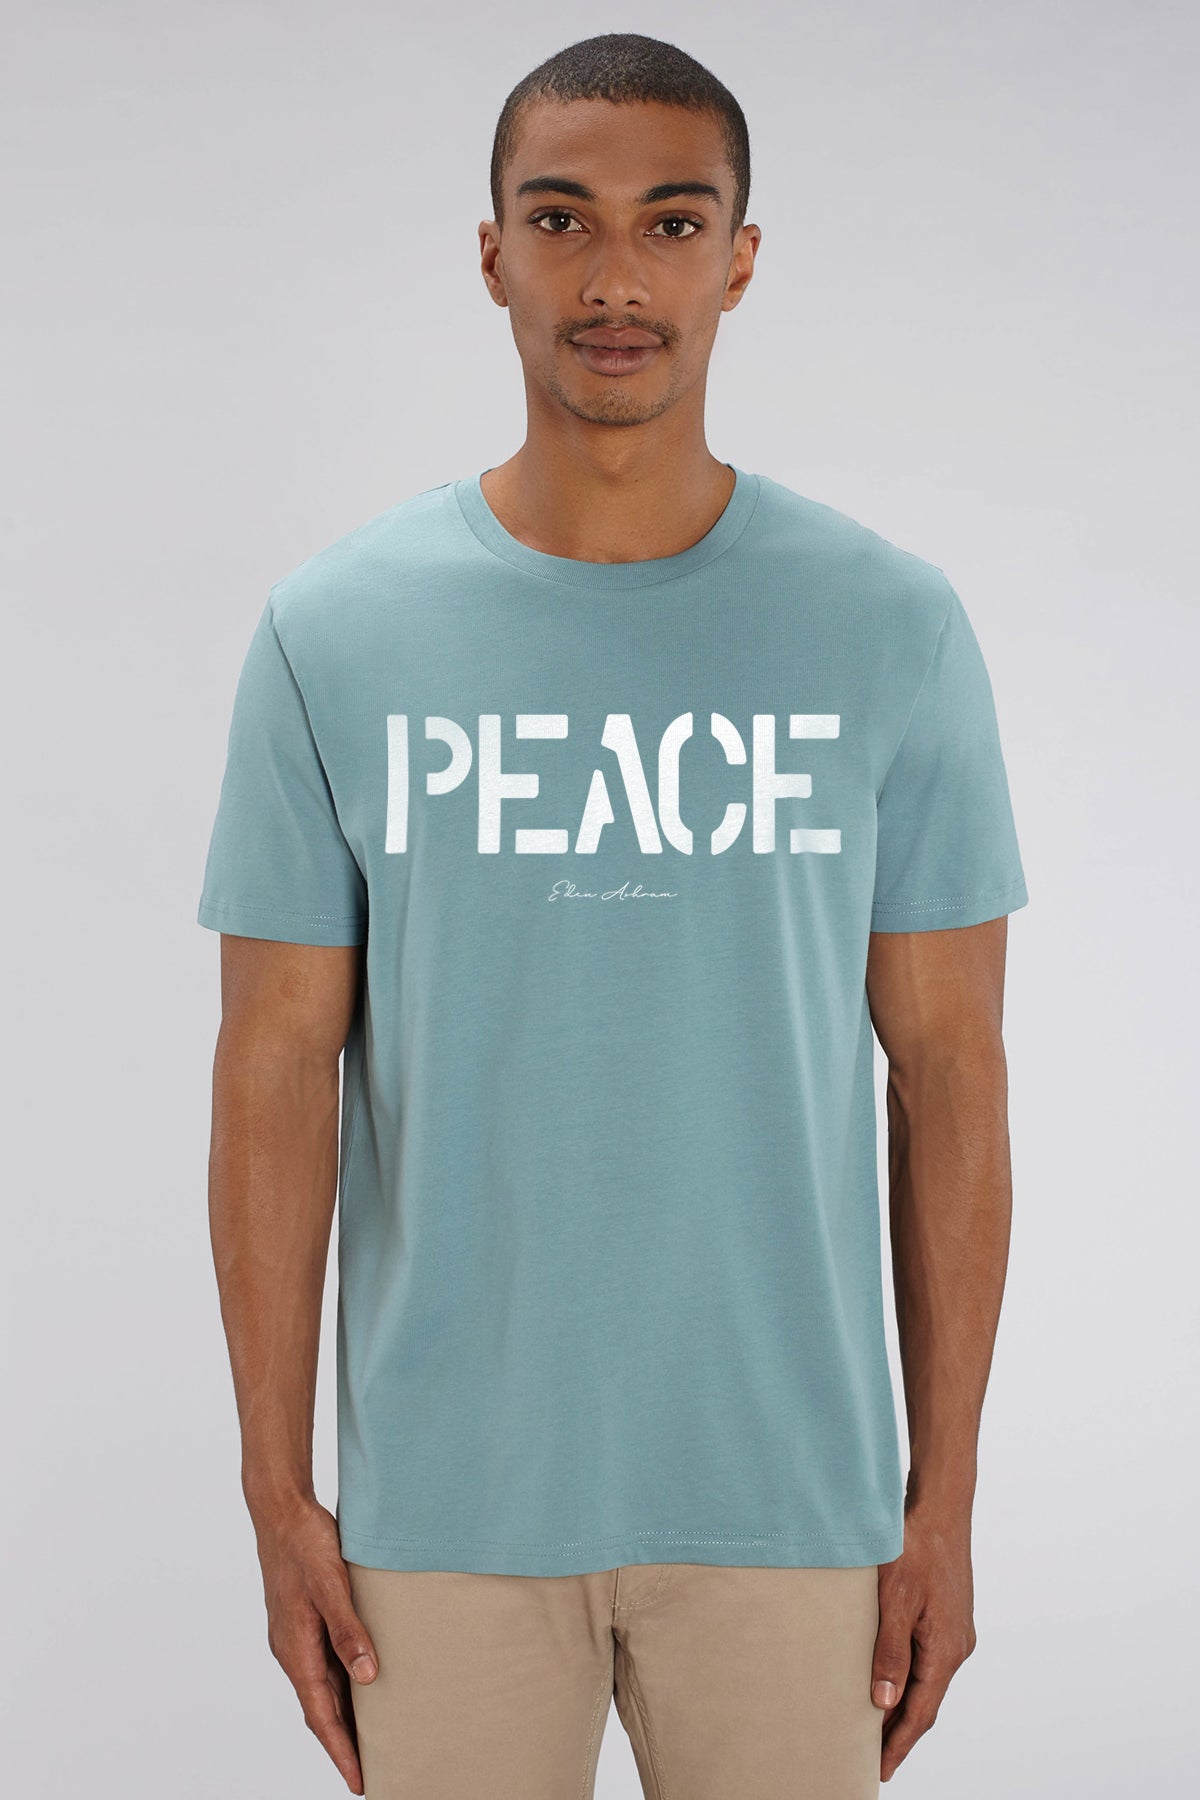 EDEN ASHRAM PEACE - Premium Classic T-Shirt